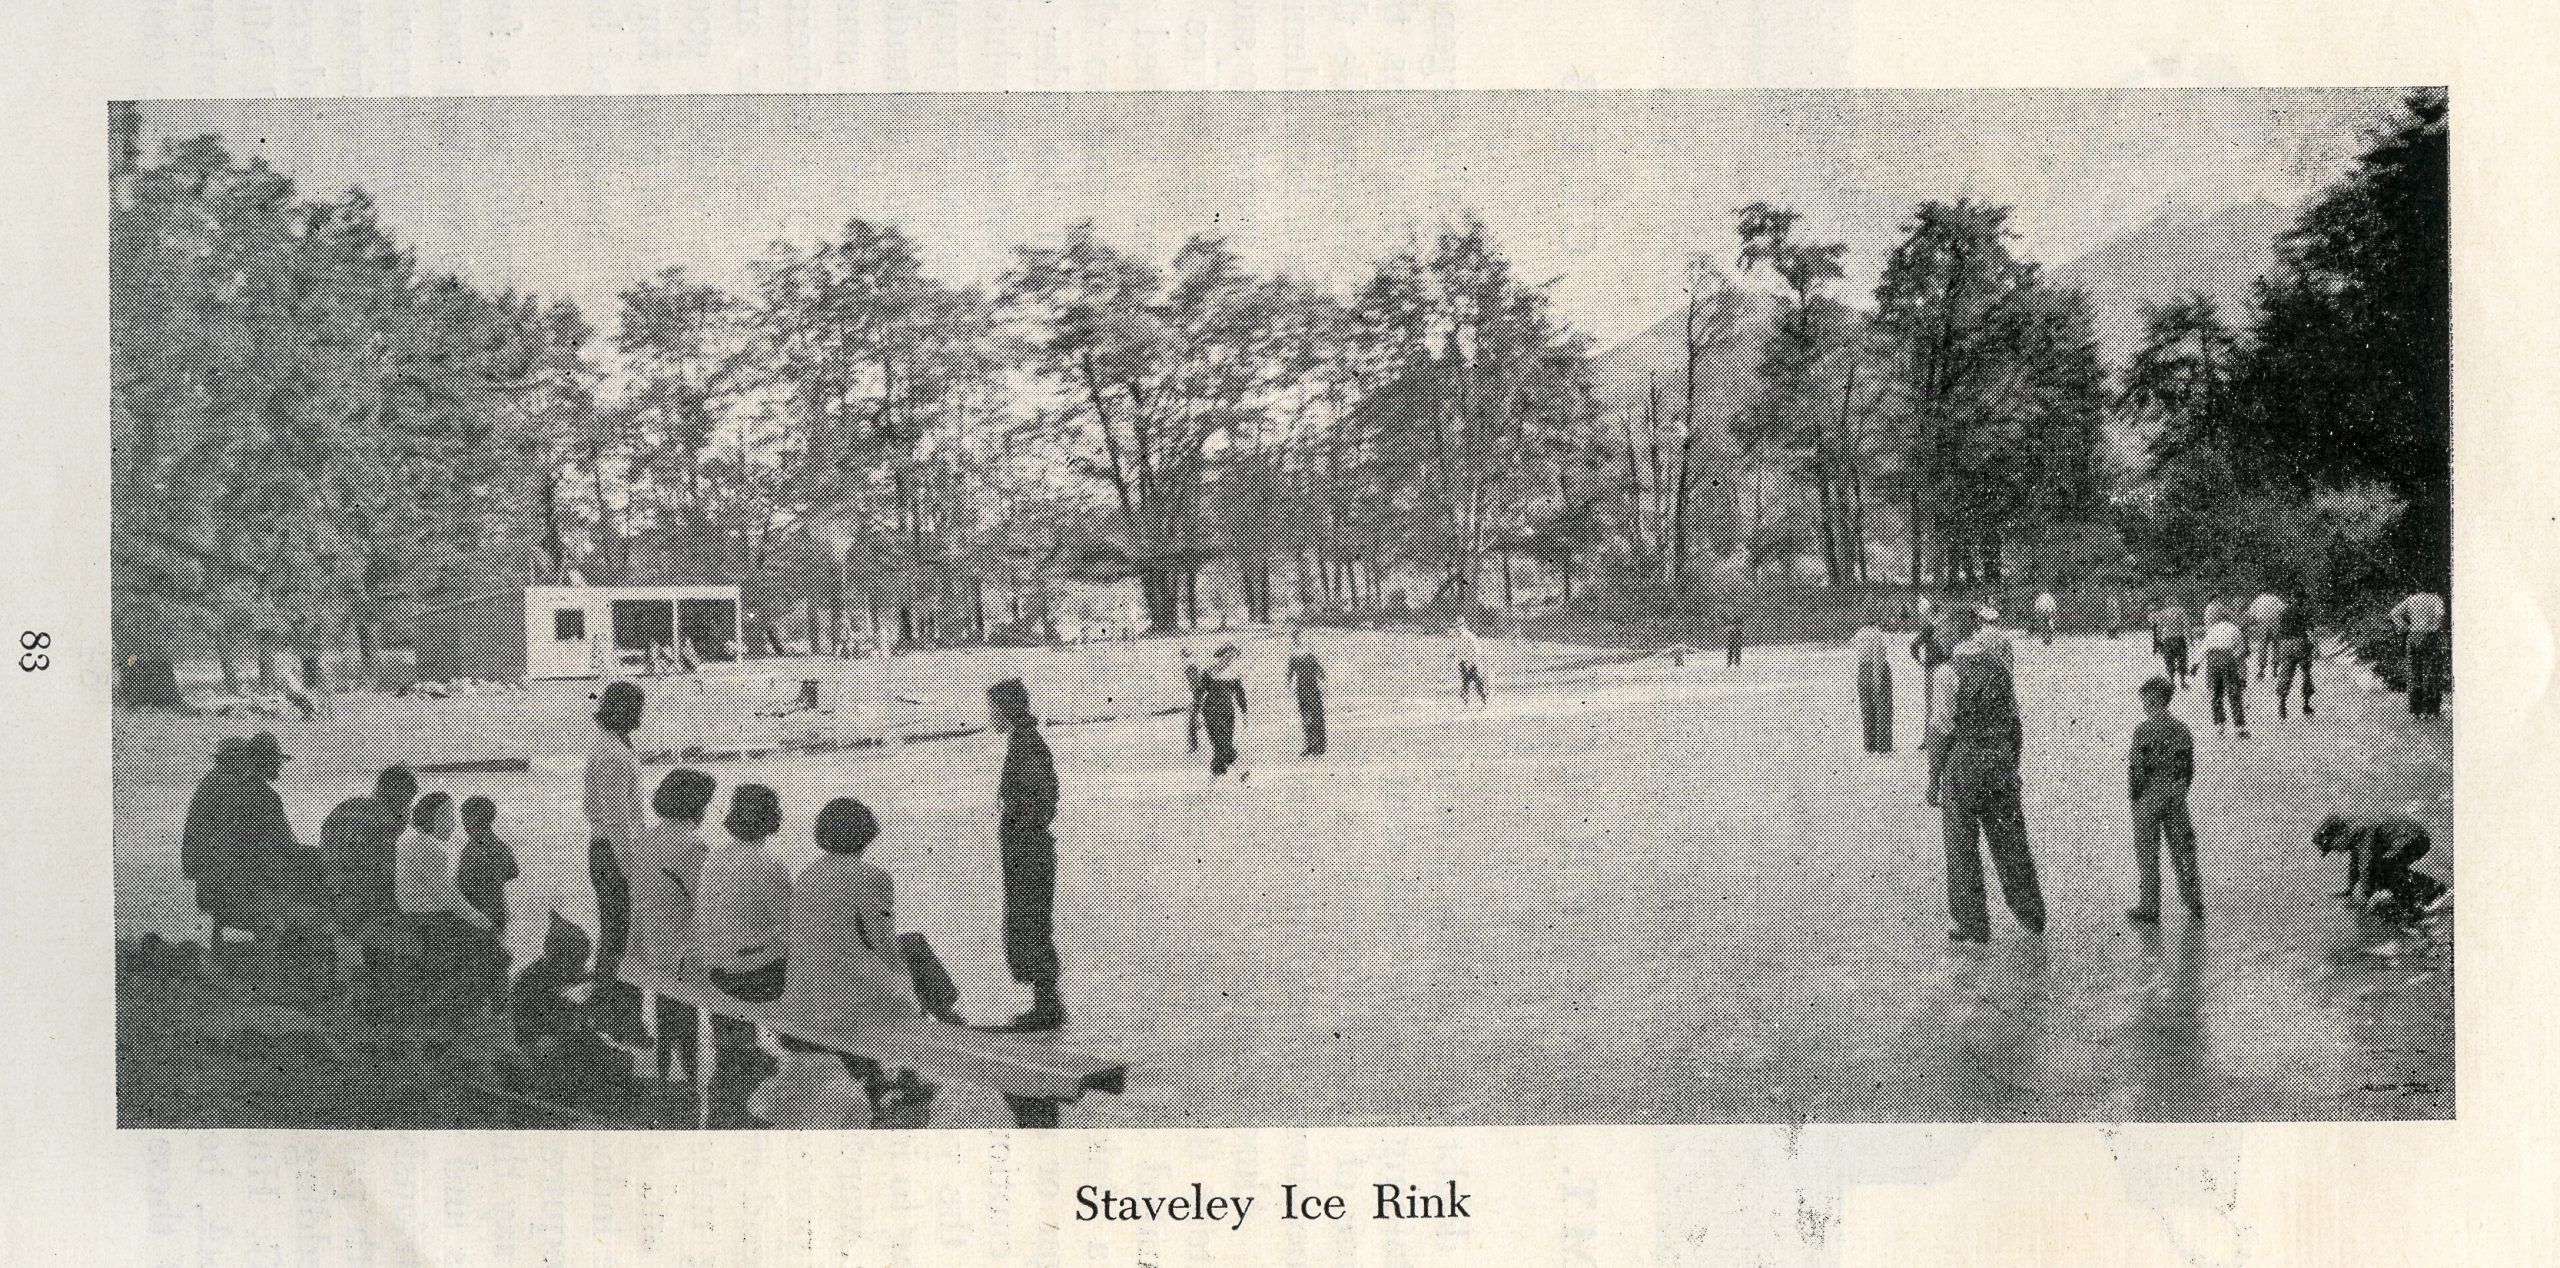 Skating at Staveley